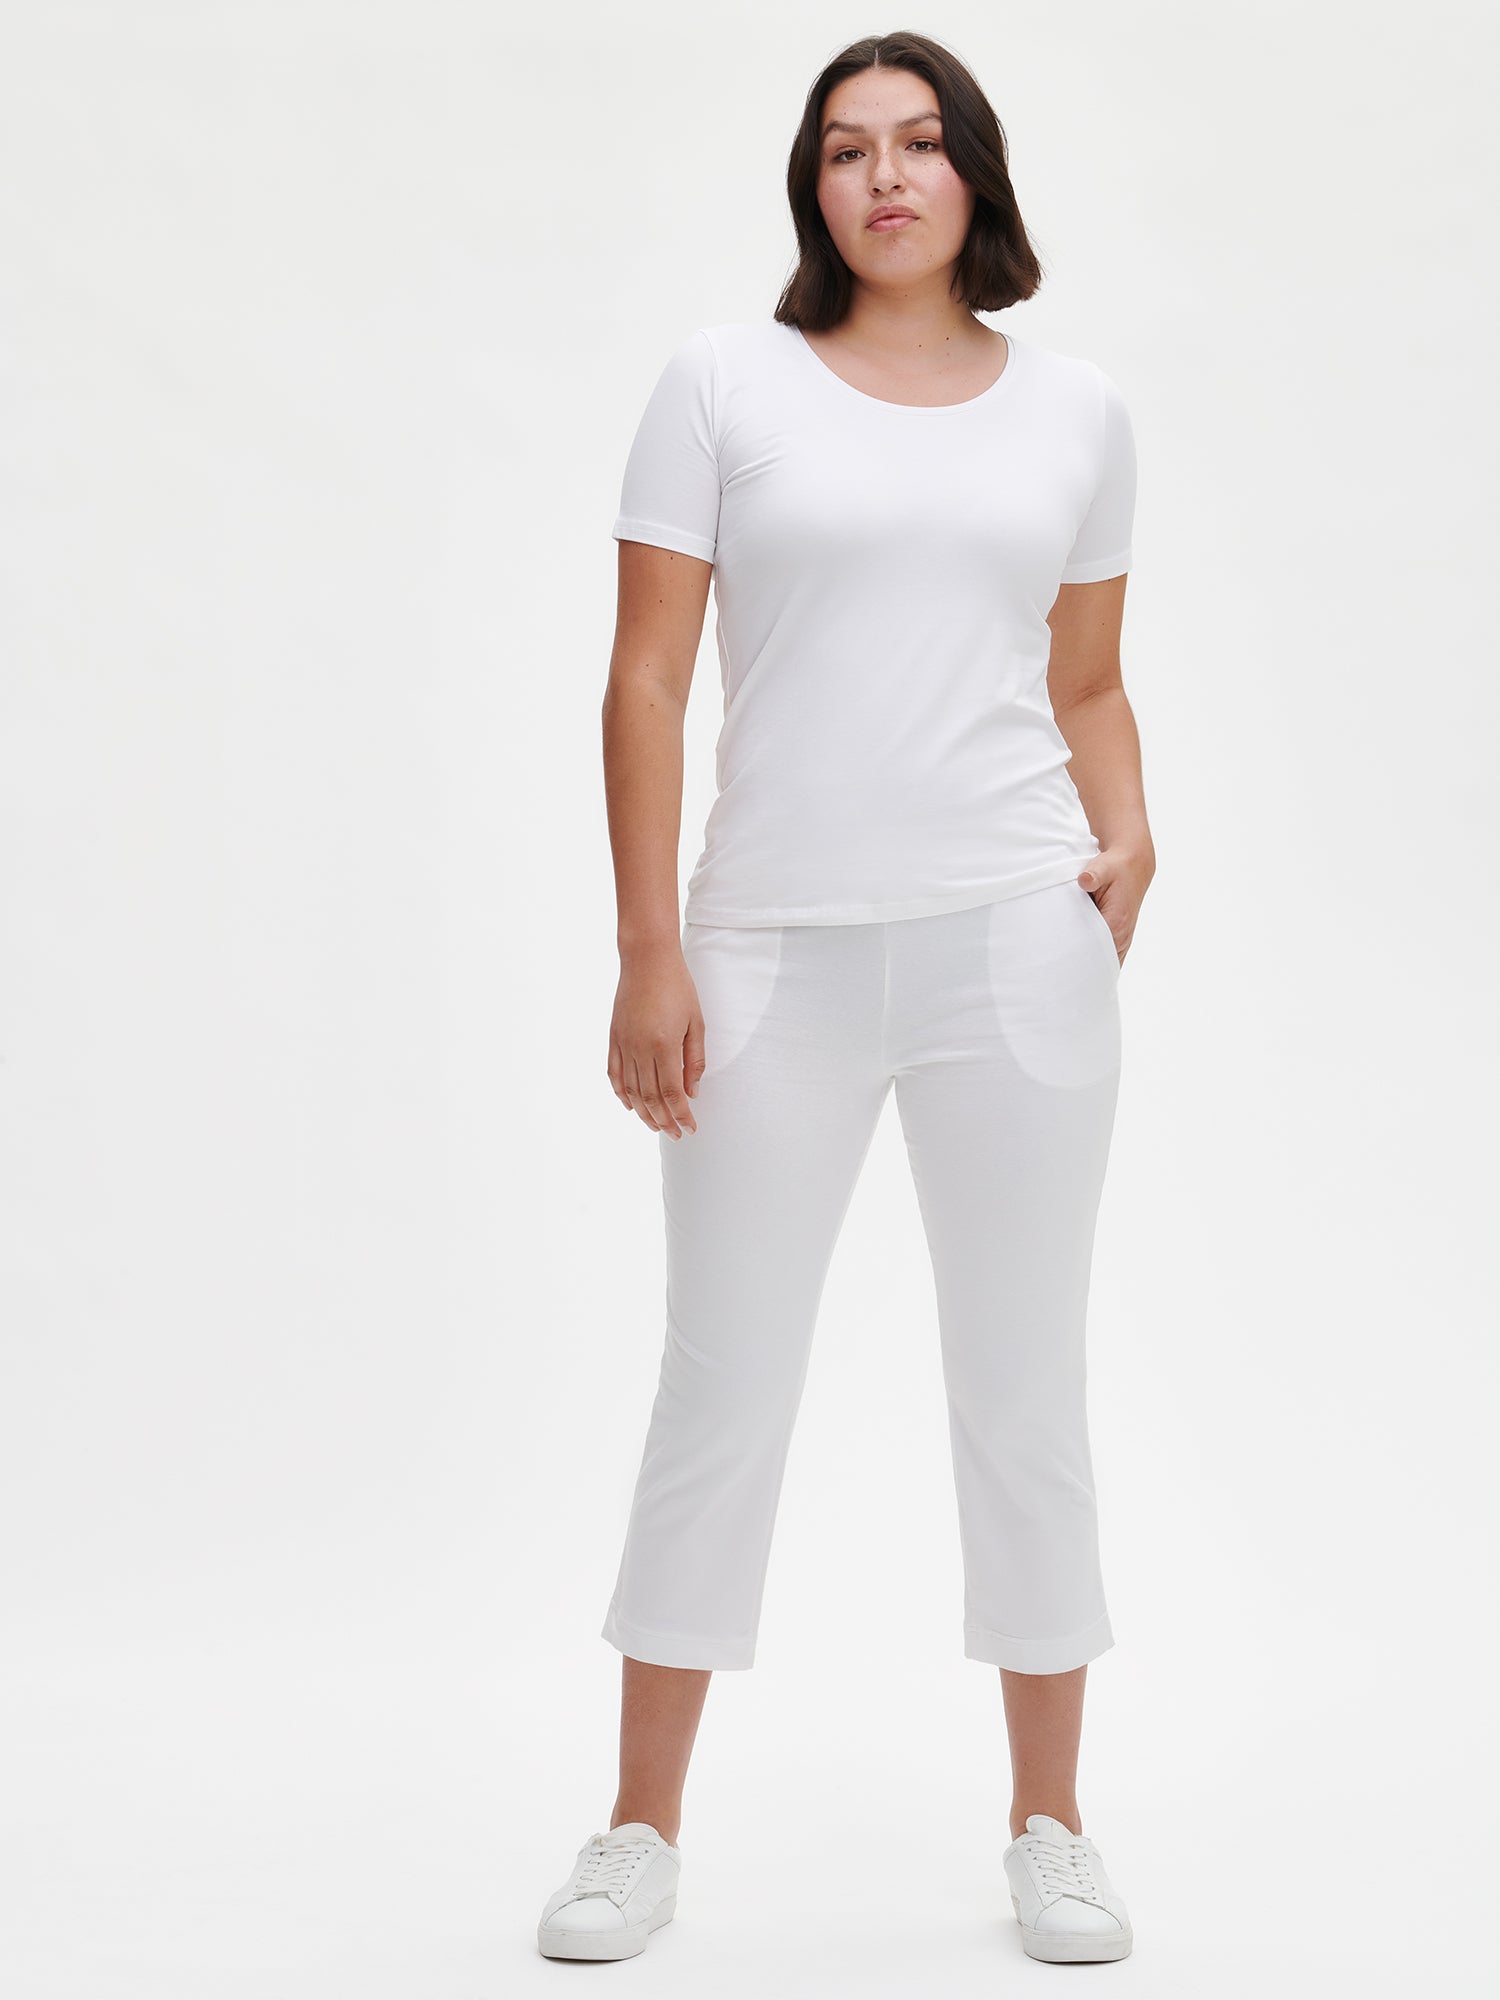 Naisten joustavat ja mukavat valkoiset Basic-housut.